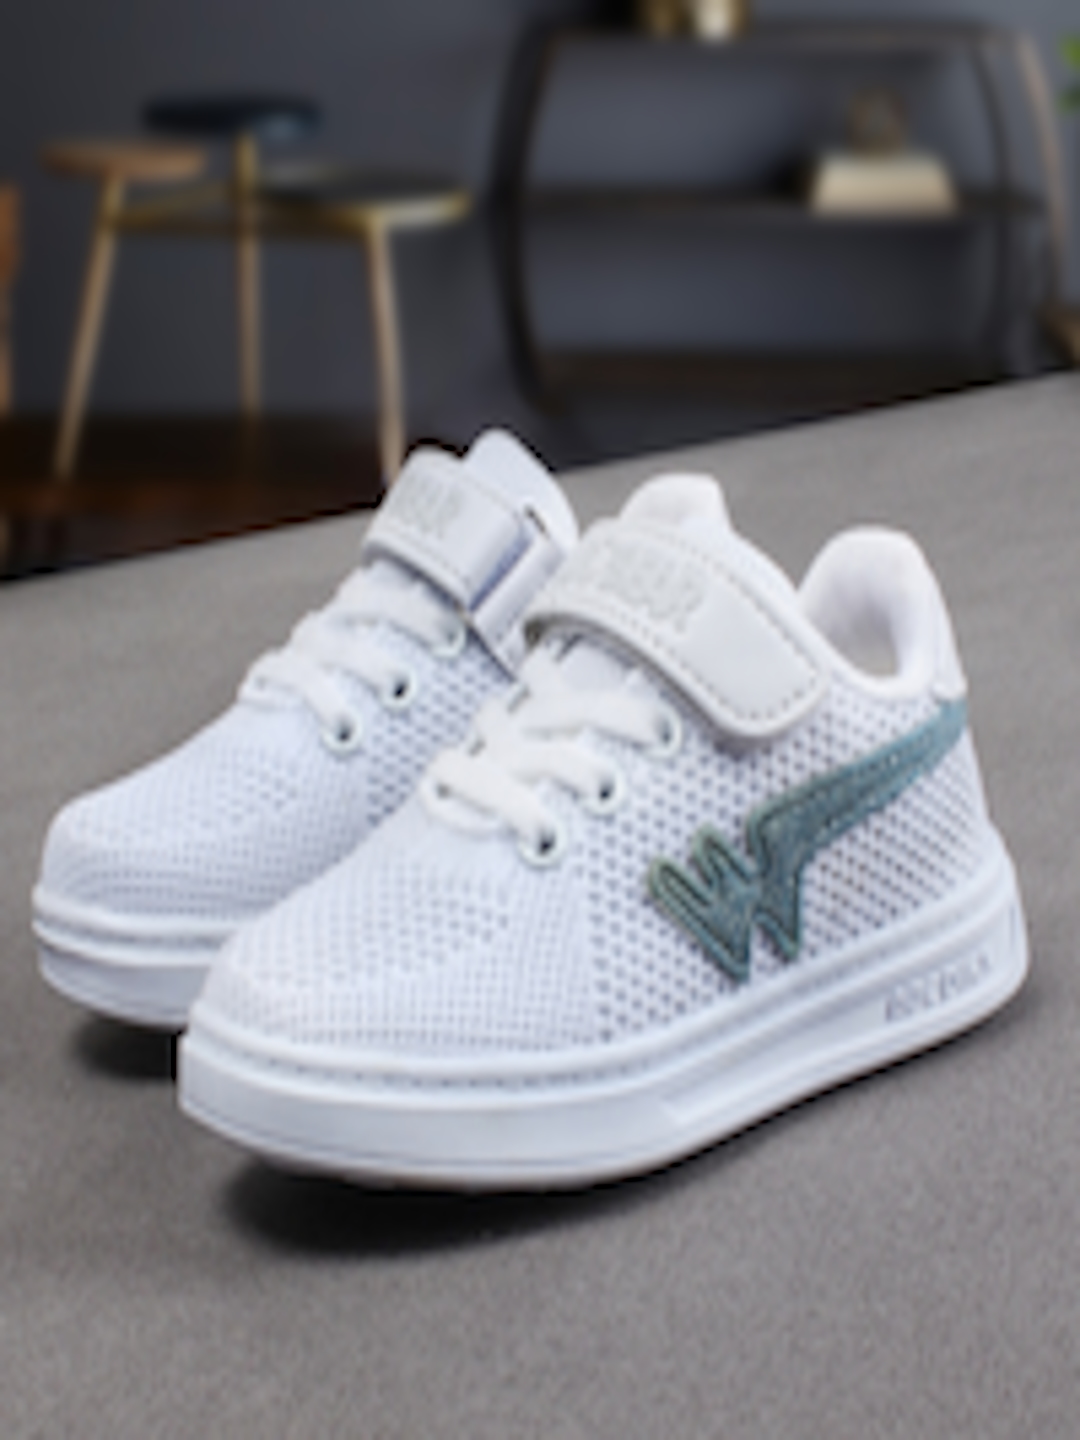 Buy Walktrendy î€€Kidsî€ White Sneakers - Casual Shoes for Unisex î€€Kidsî€ ...